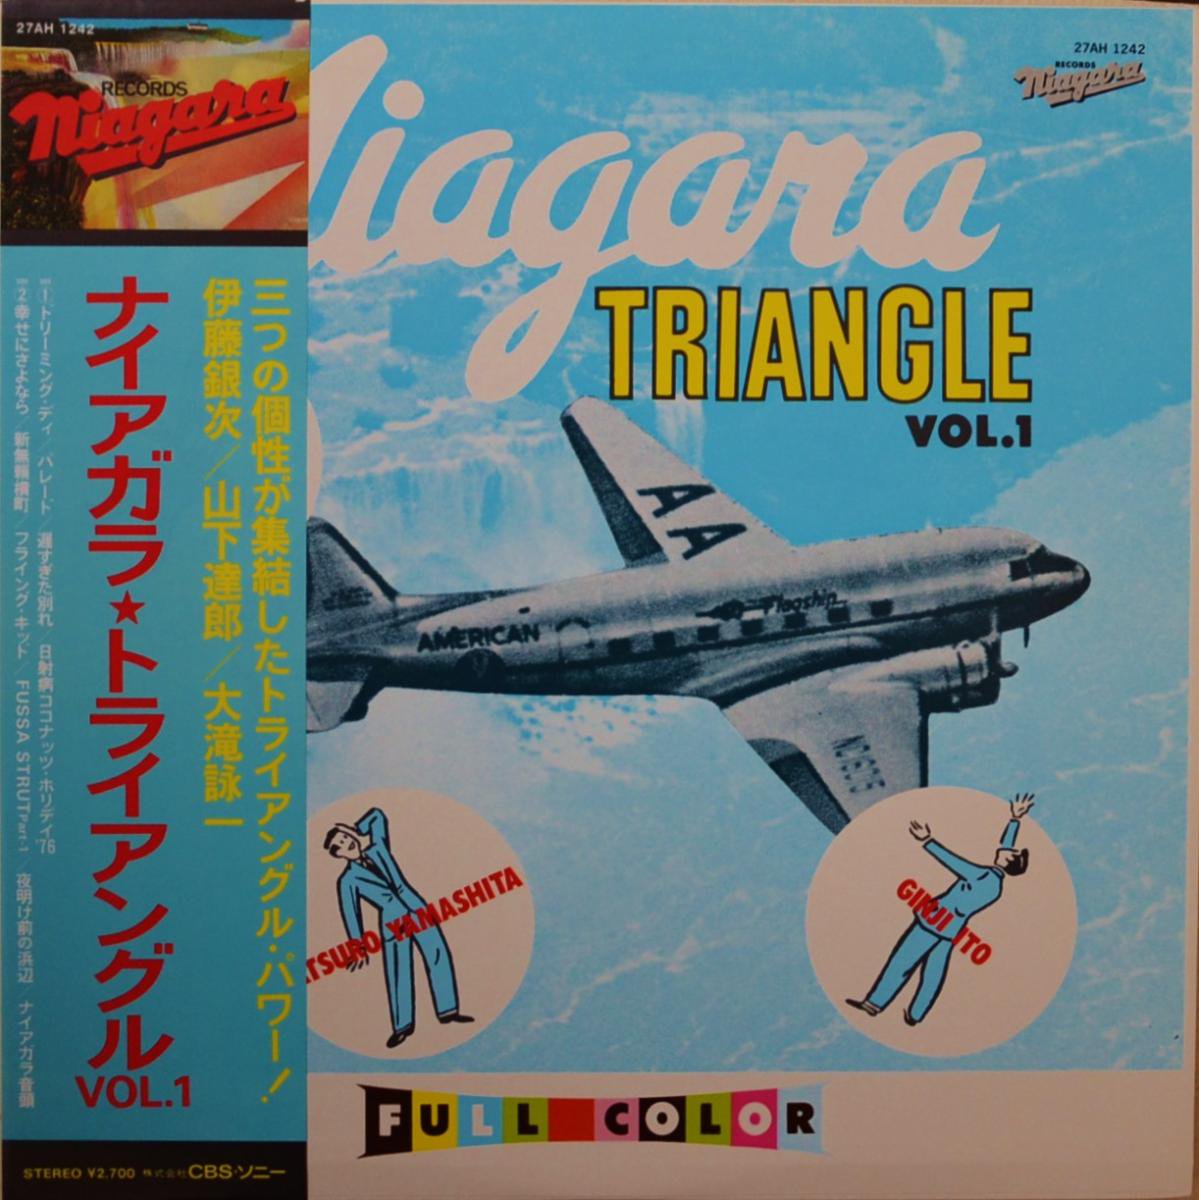 ナイアガラ・トライアングル VOL.1 / NIAGARA TRIANGLE VOL.1 (LP 